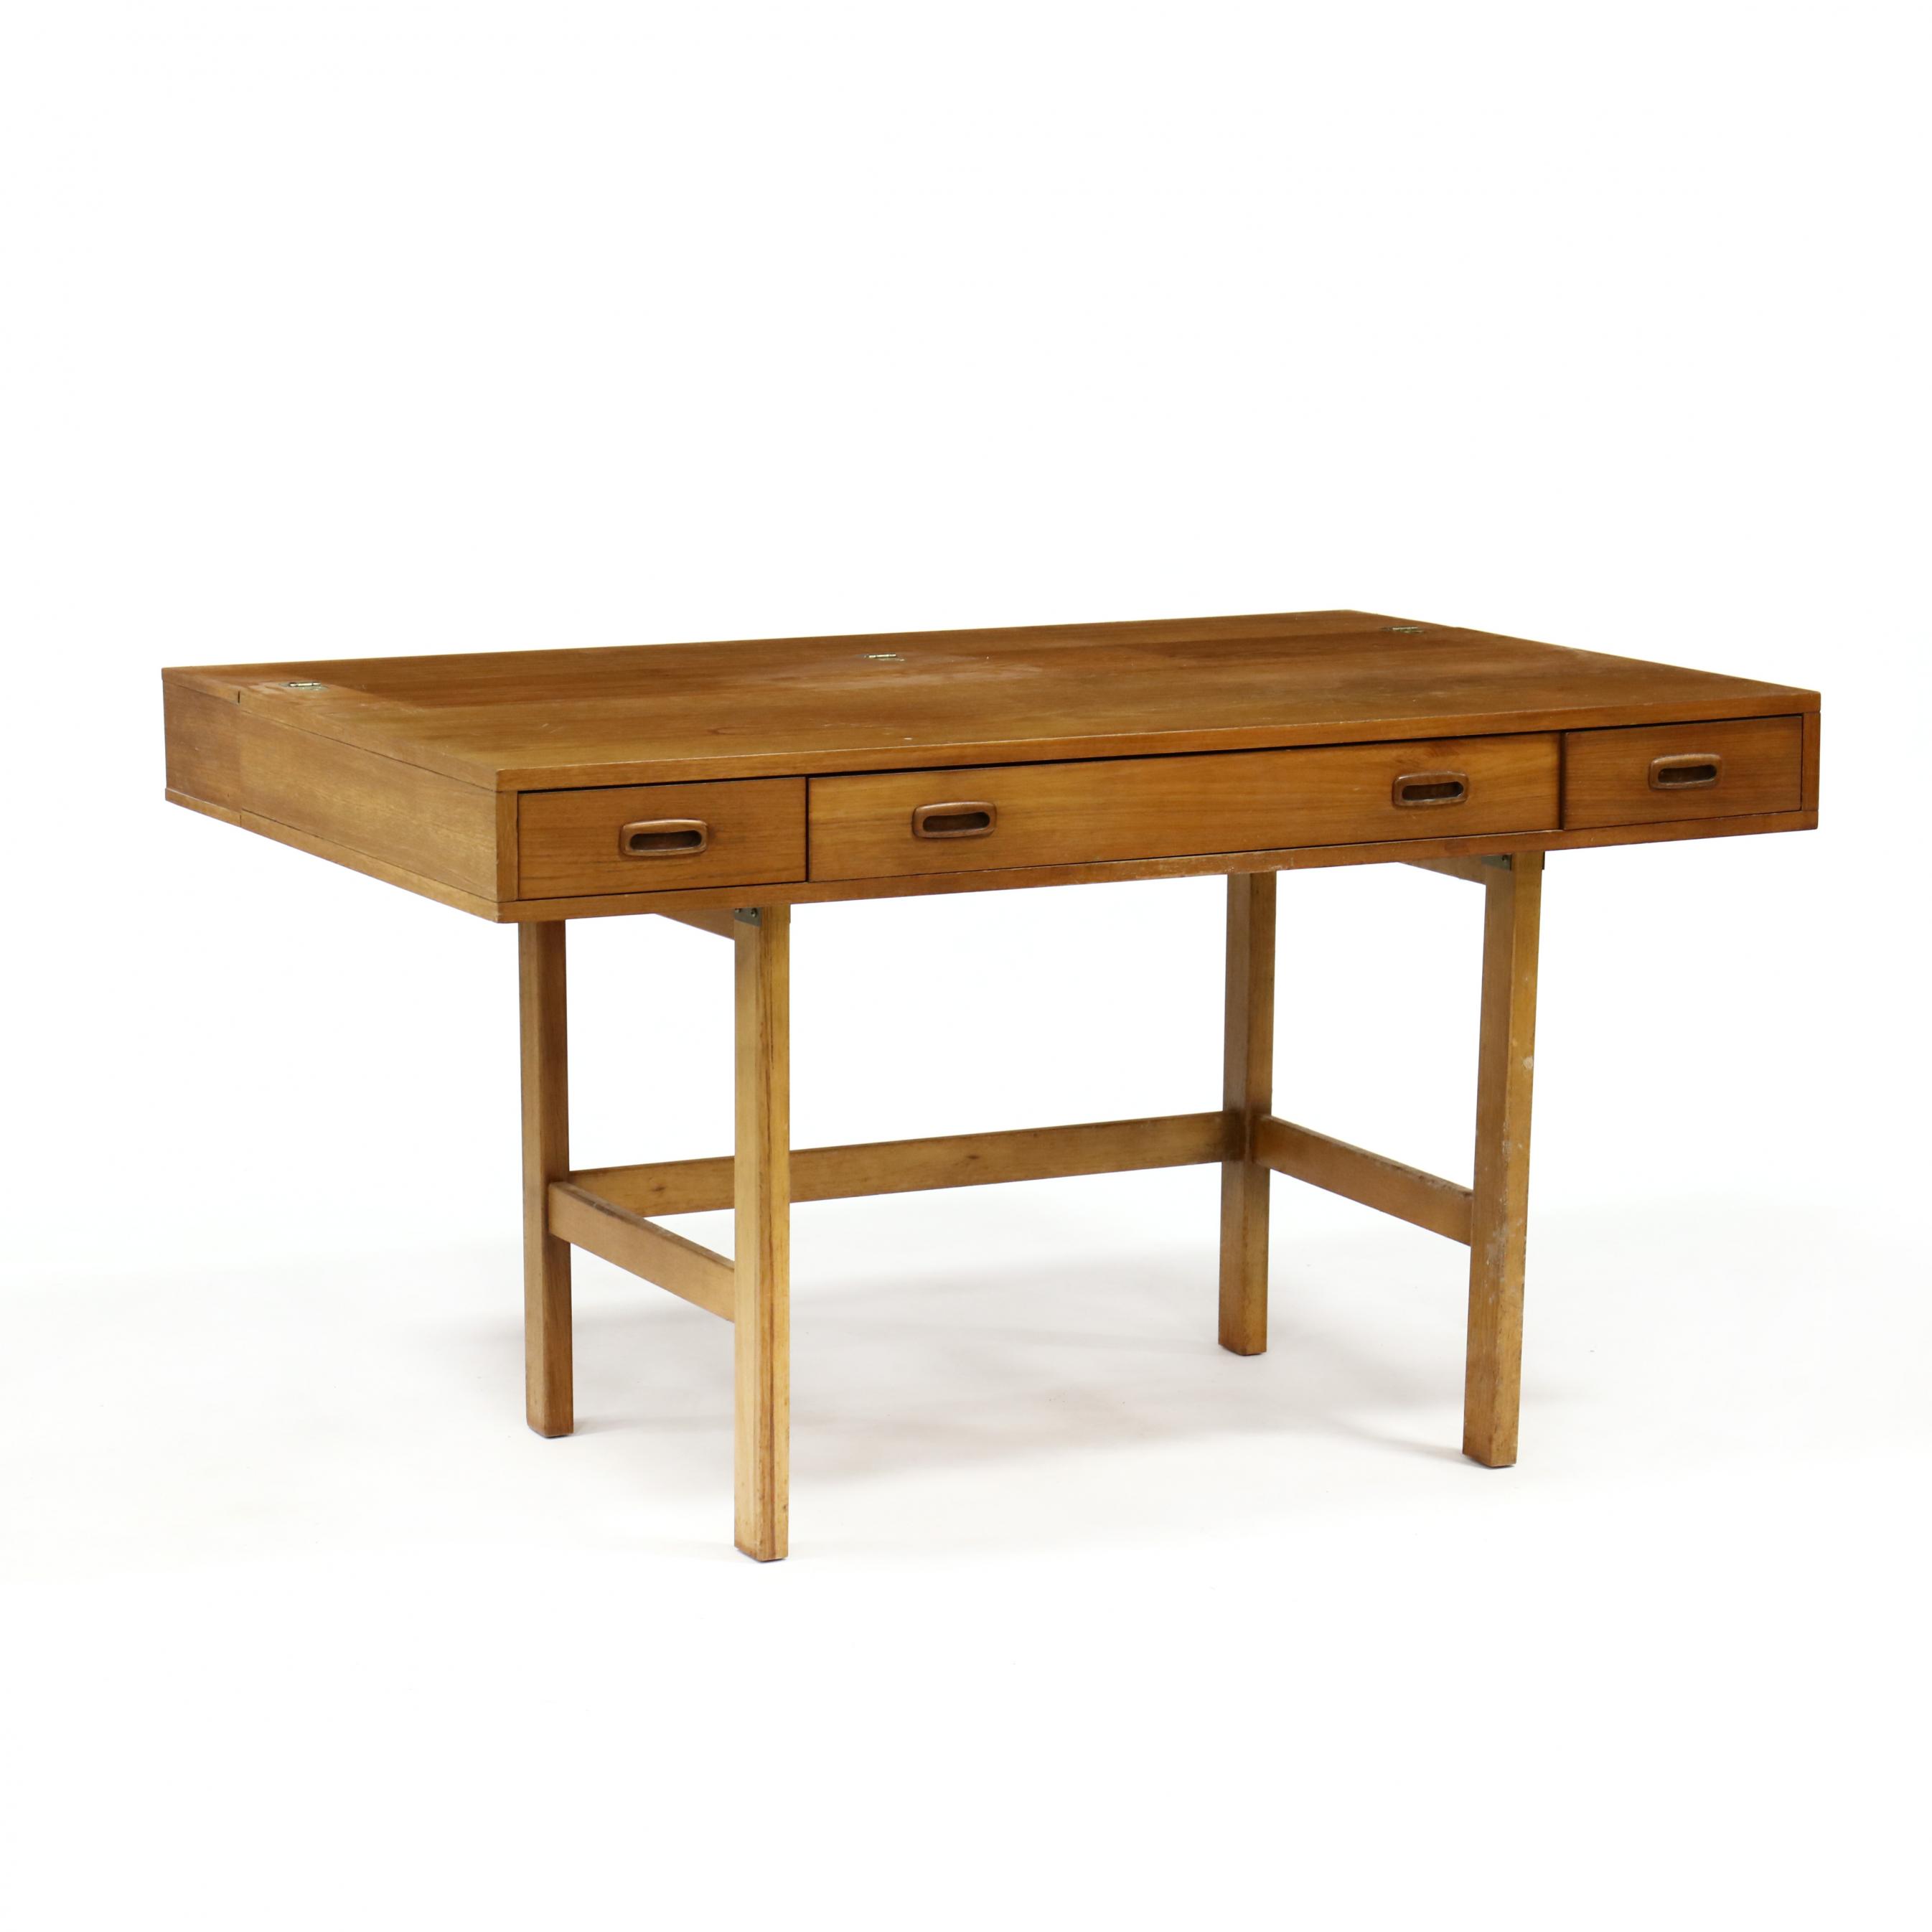 Danish Style Flip Top Desk Lot 2128 Online Only Auction Arts